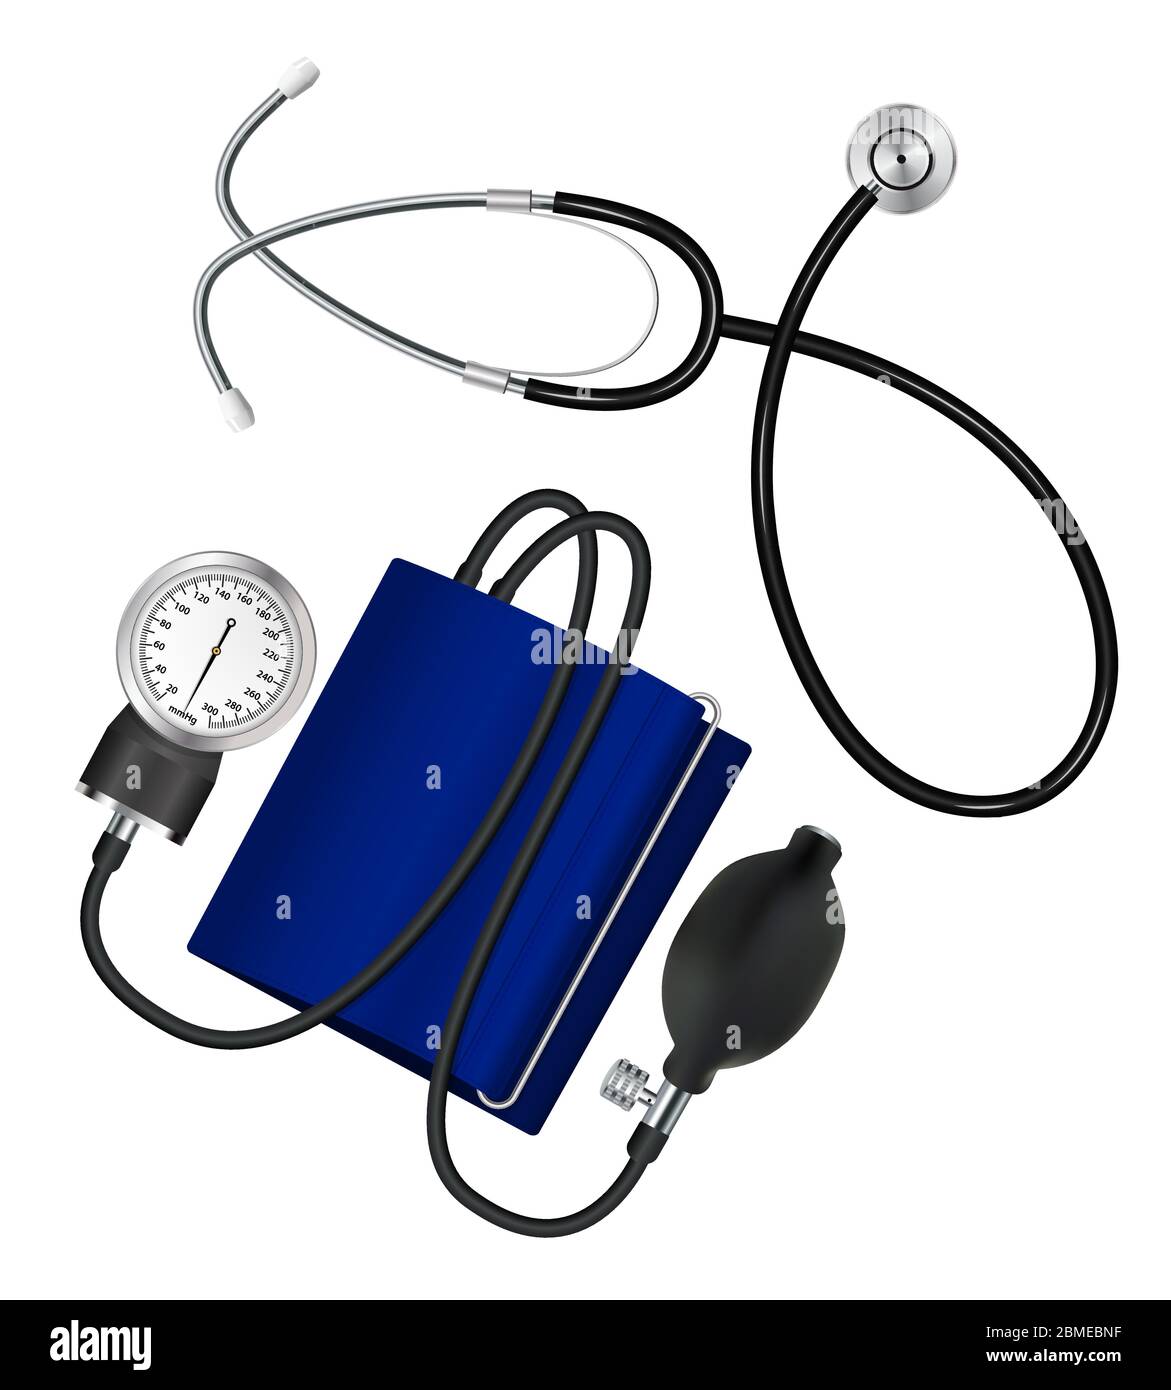 Phonendoscope et tonomètre. Configurez les instruments médicaux pour mesurer la pression artérielle et le pouls. Vecteur. Illustration de Vecteur